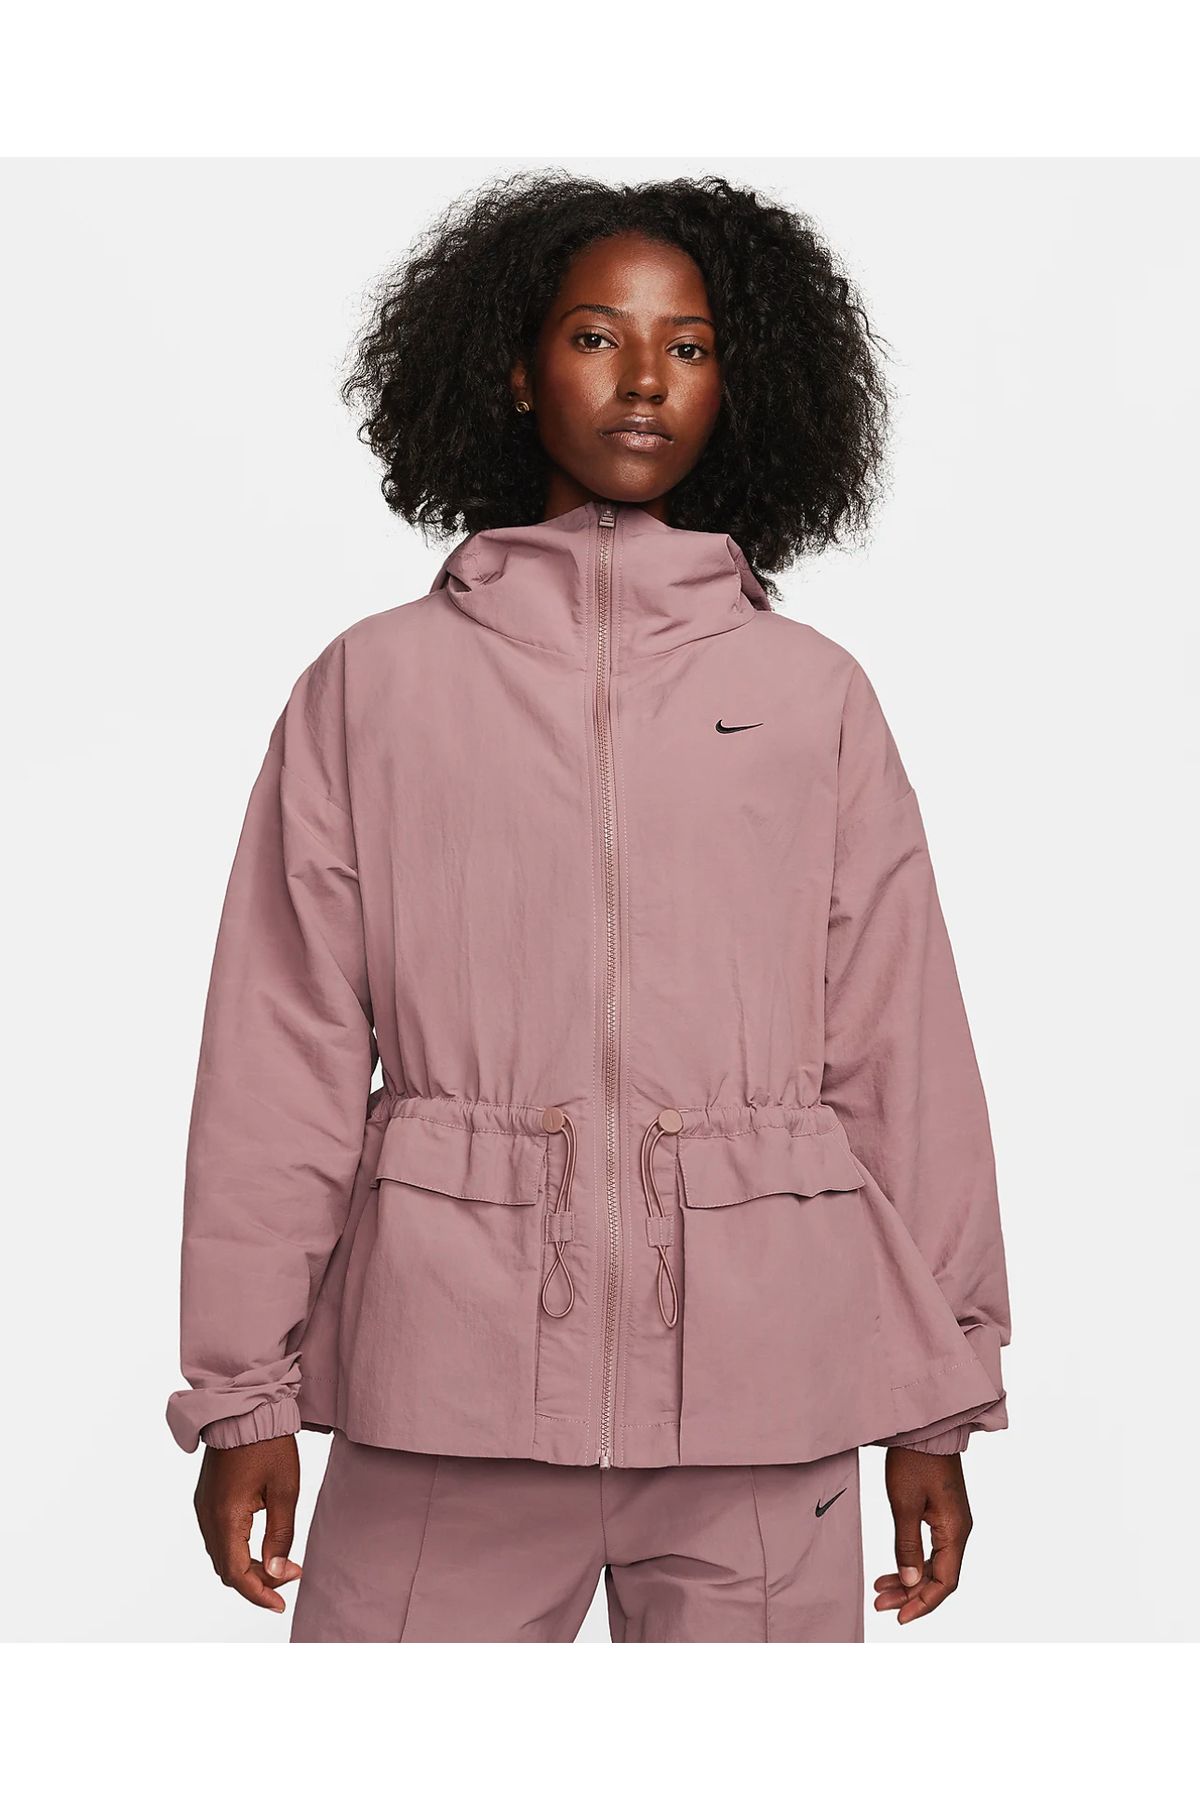 Nike Sportswear Everything Suya Dayanıklı Oversize(Büyük Kalıp) Kapüşonlu Ceket